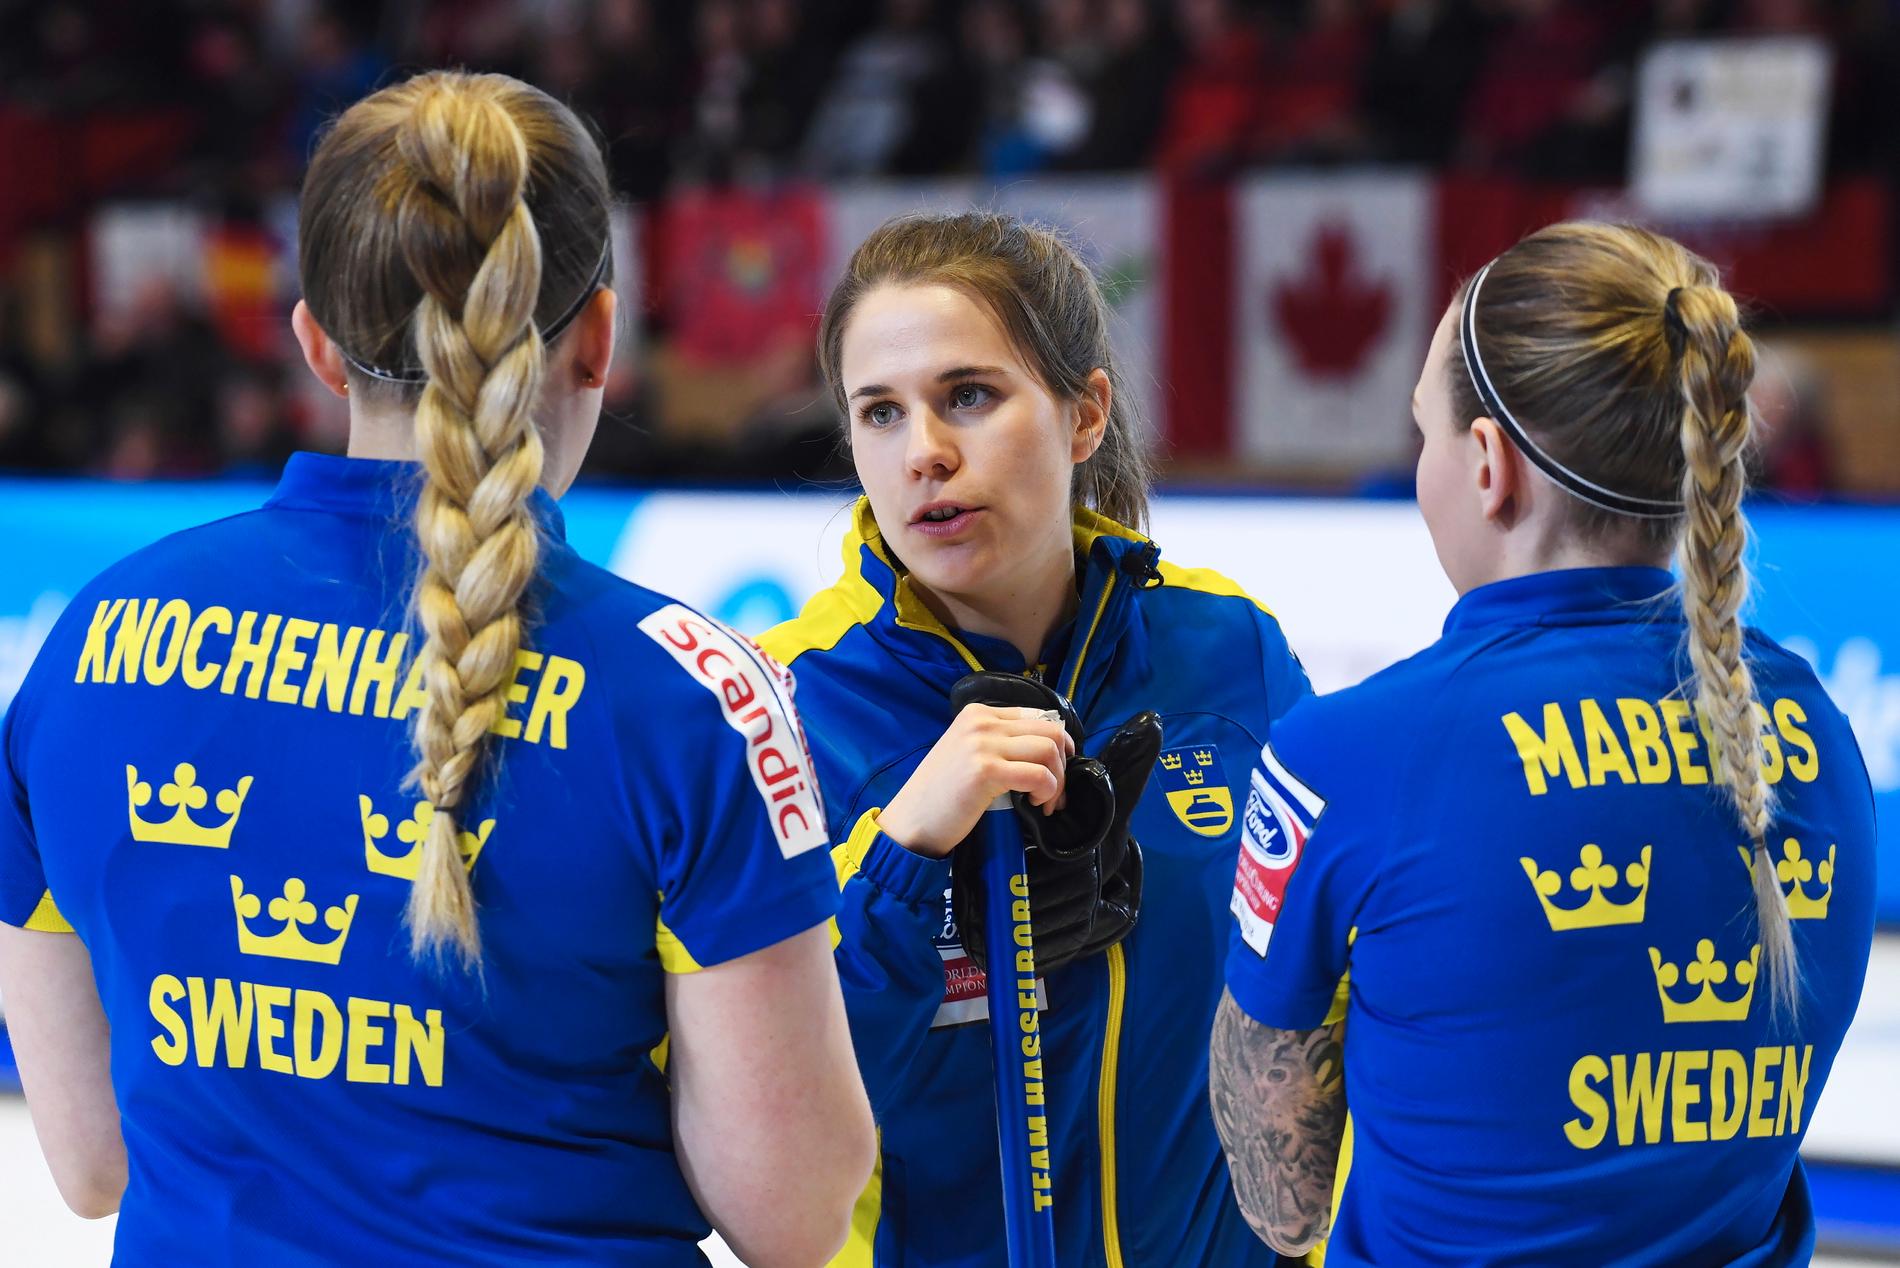 Svenska curlingskippern Anna Hasselborg, mitten, flankerad av lagkamraterna Agnes Knochenhauer och Sofia Mabergs. Arkivbild.